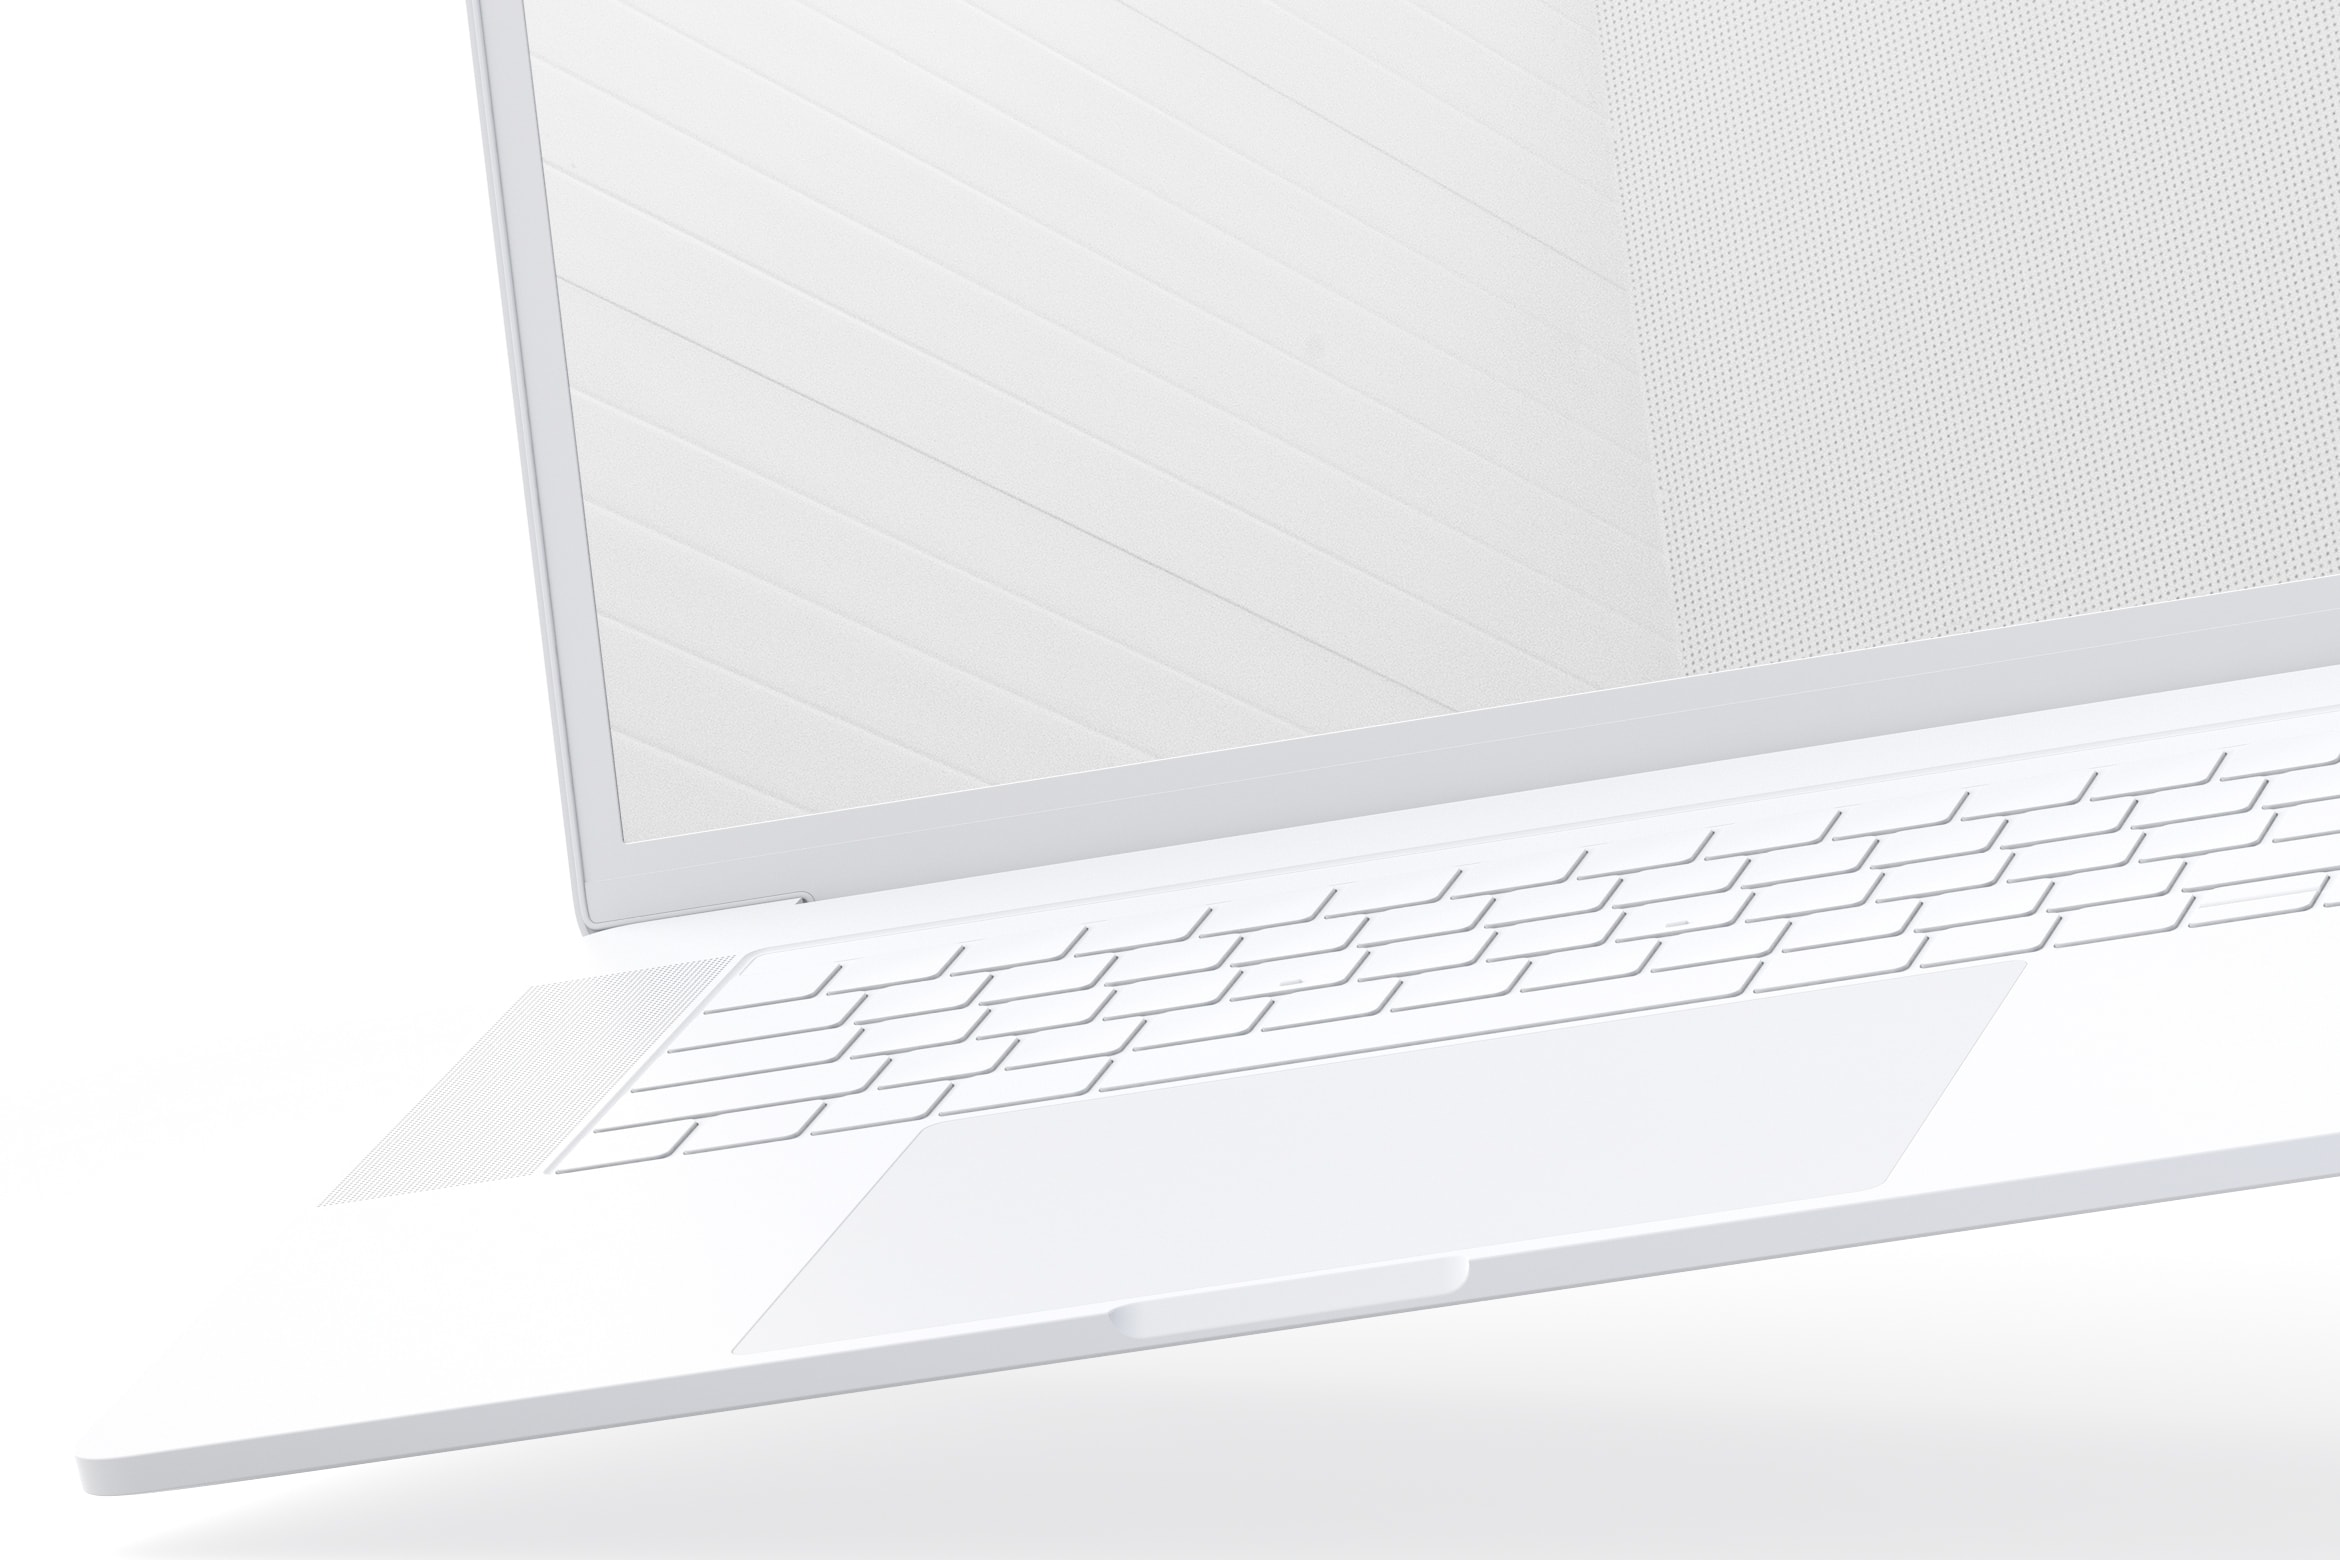 15寸MacBook Pro笔记本电脑屏幕演示样机模板 Clay MacBook Pro 15" with Touch Bar Mockup插图(5)